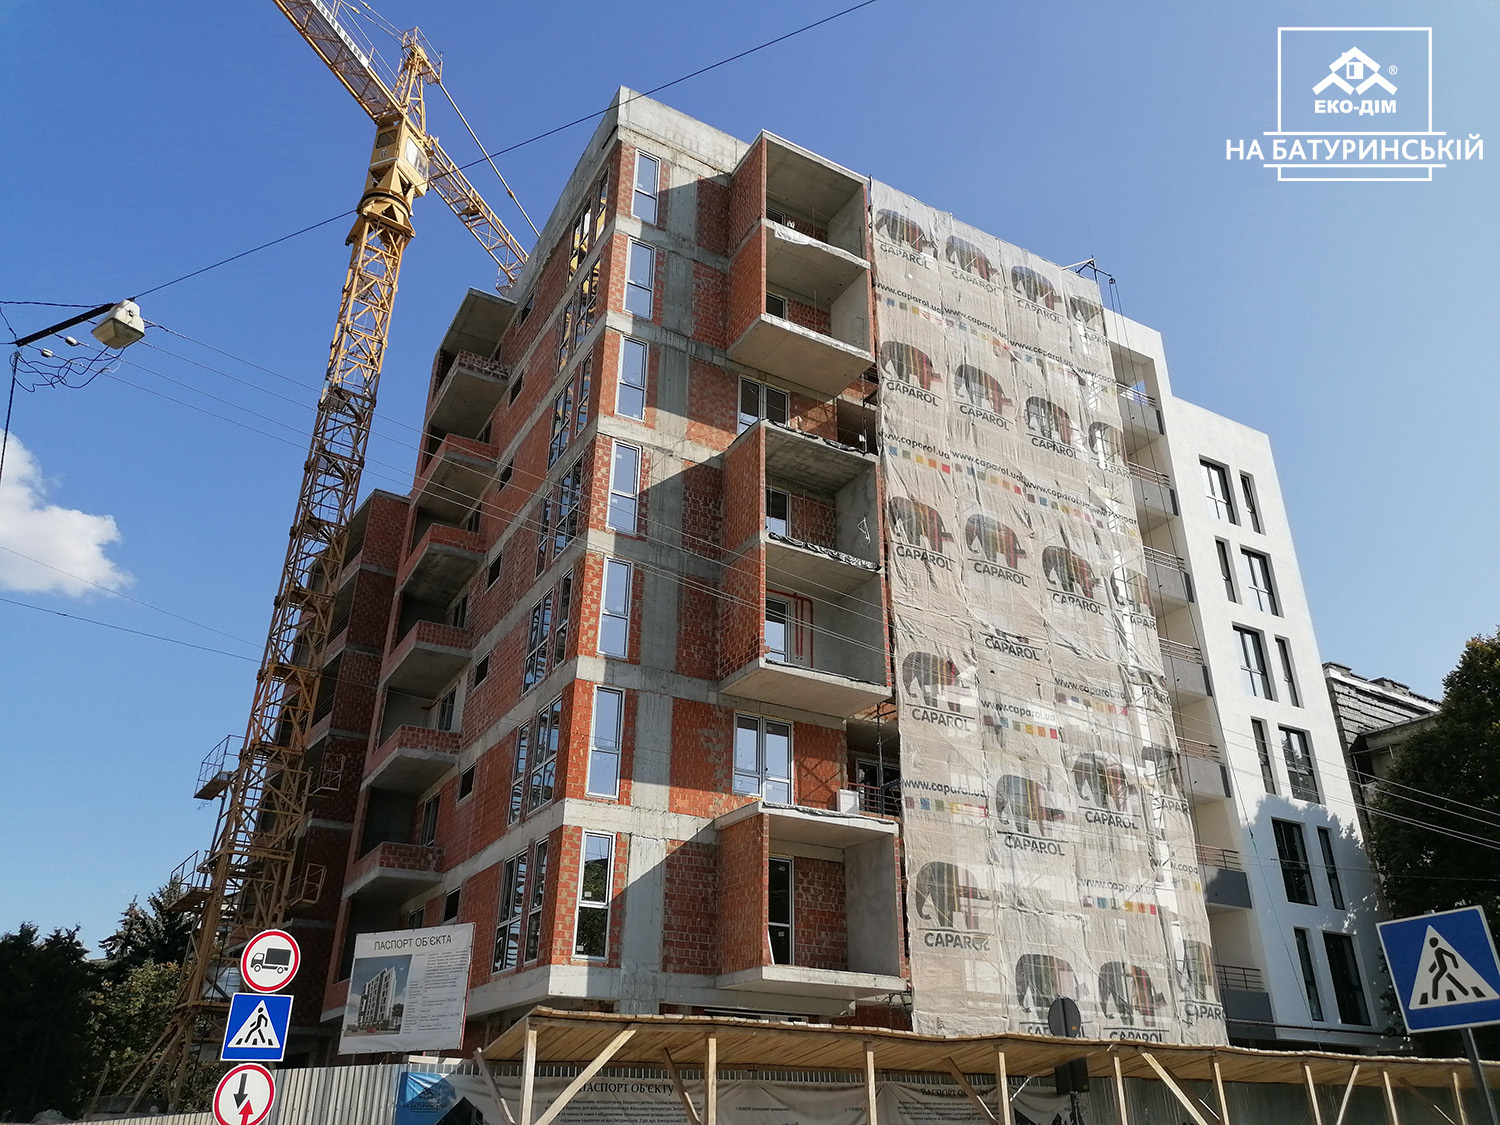 Ход строительства ЖК Эко-дом на Батуринской, авг, 2020 год